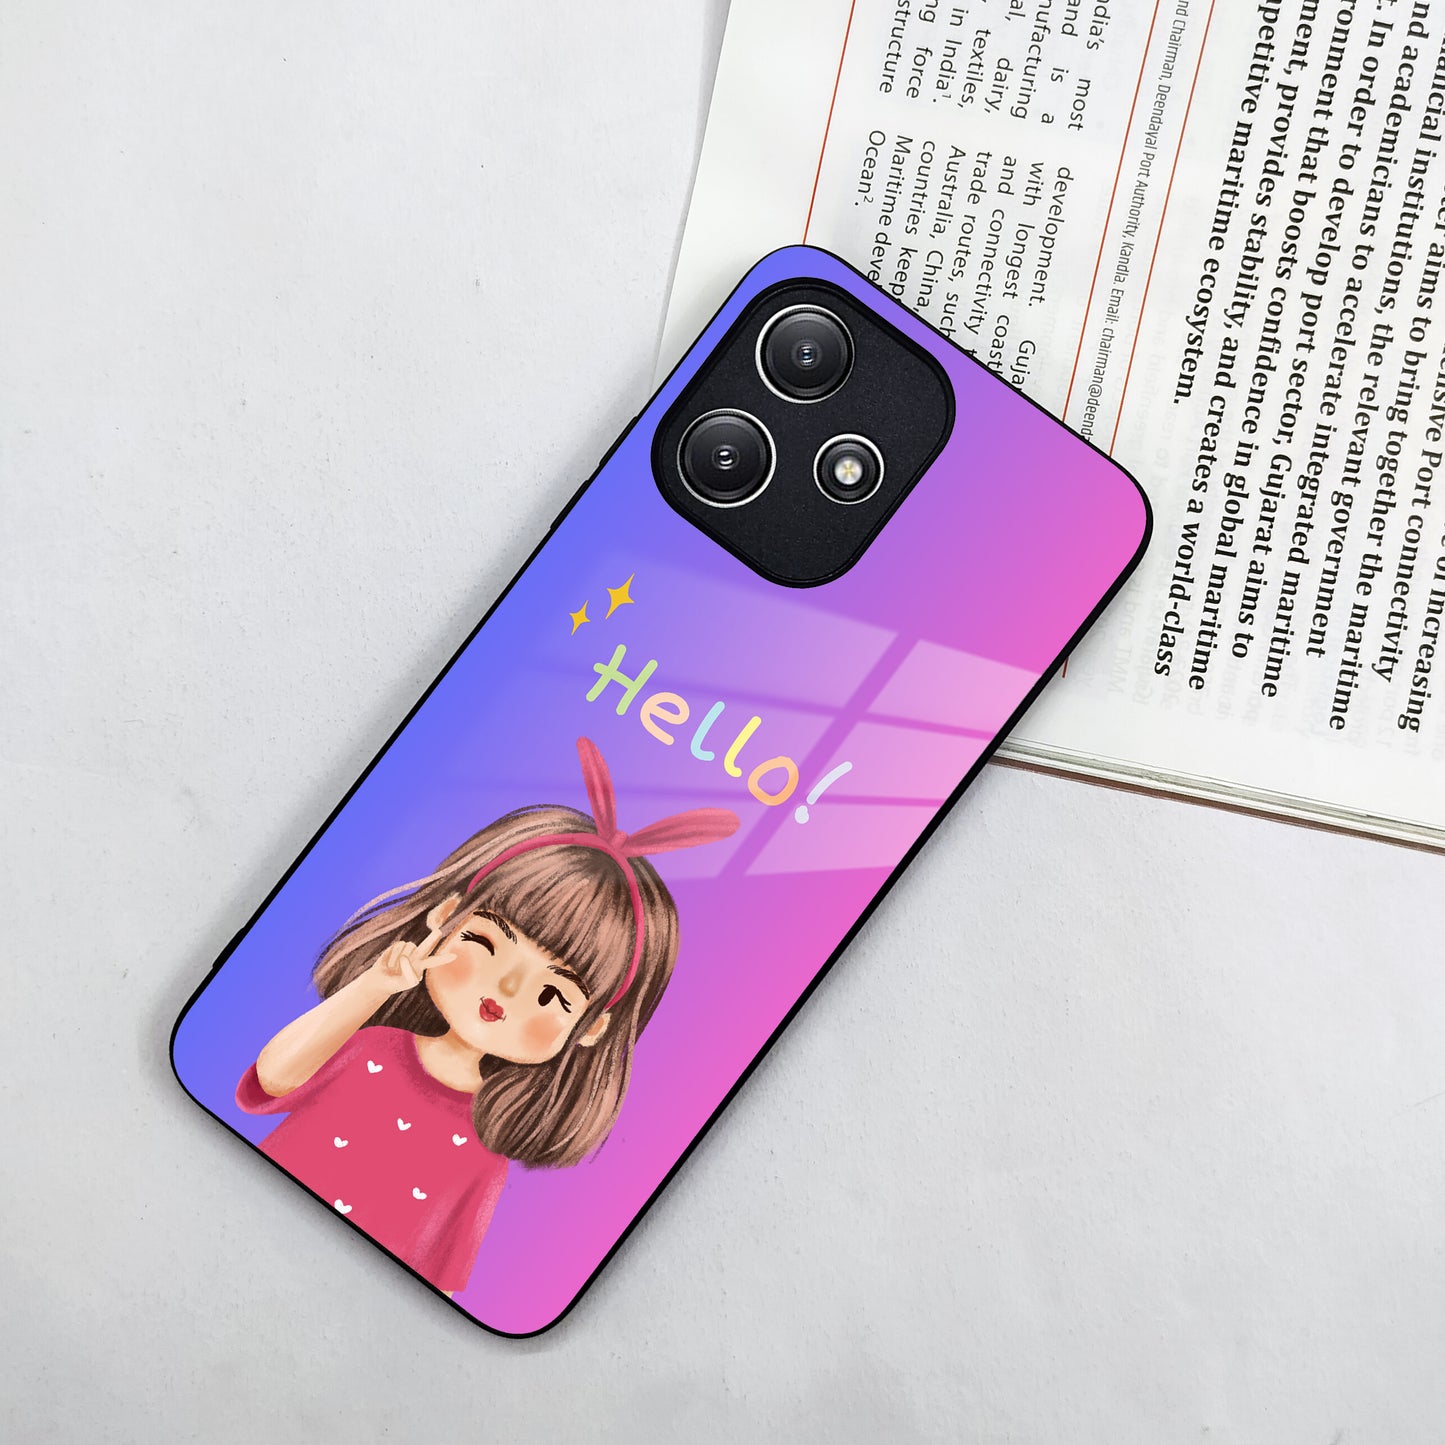 Cute Girl Hello Glass Case For Redmi/Xiaomi